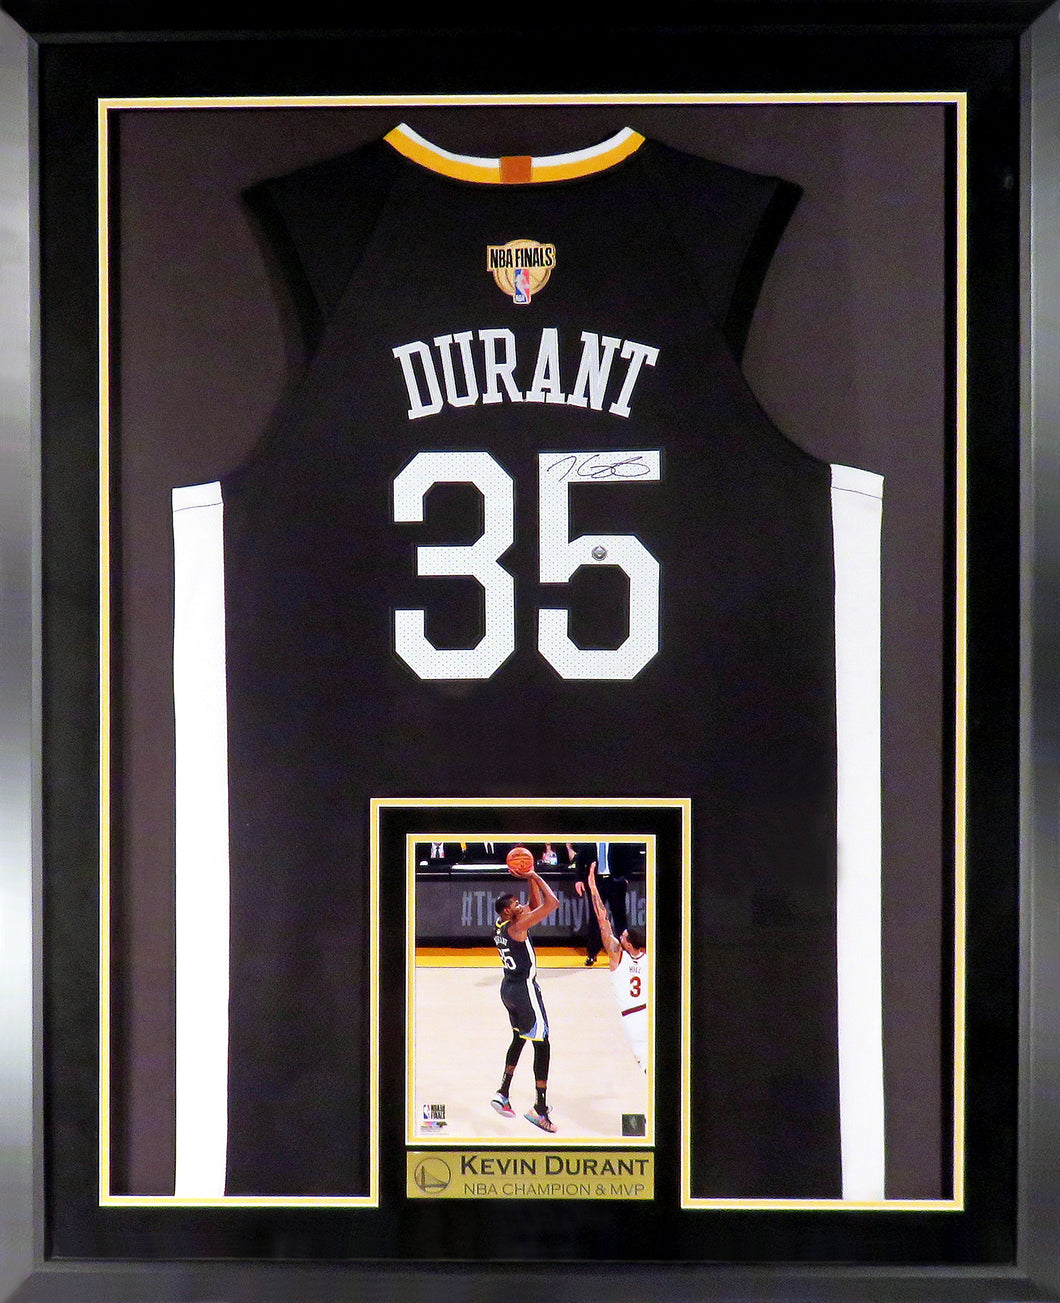 Kevin Durant framed jersey